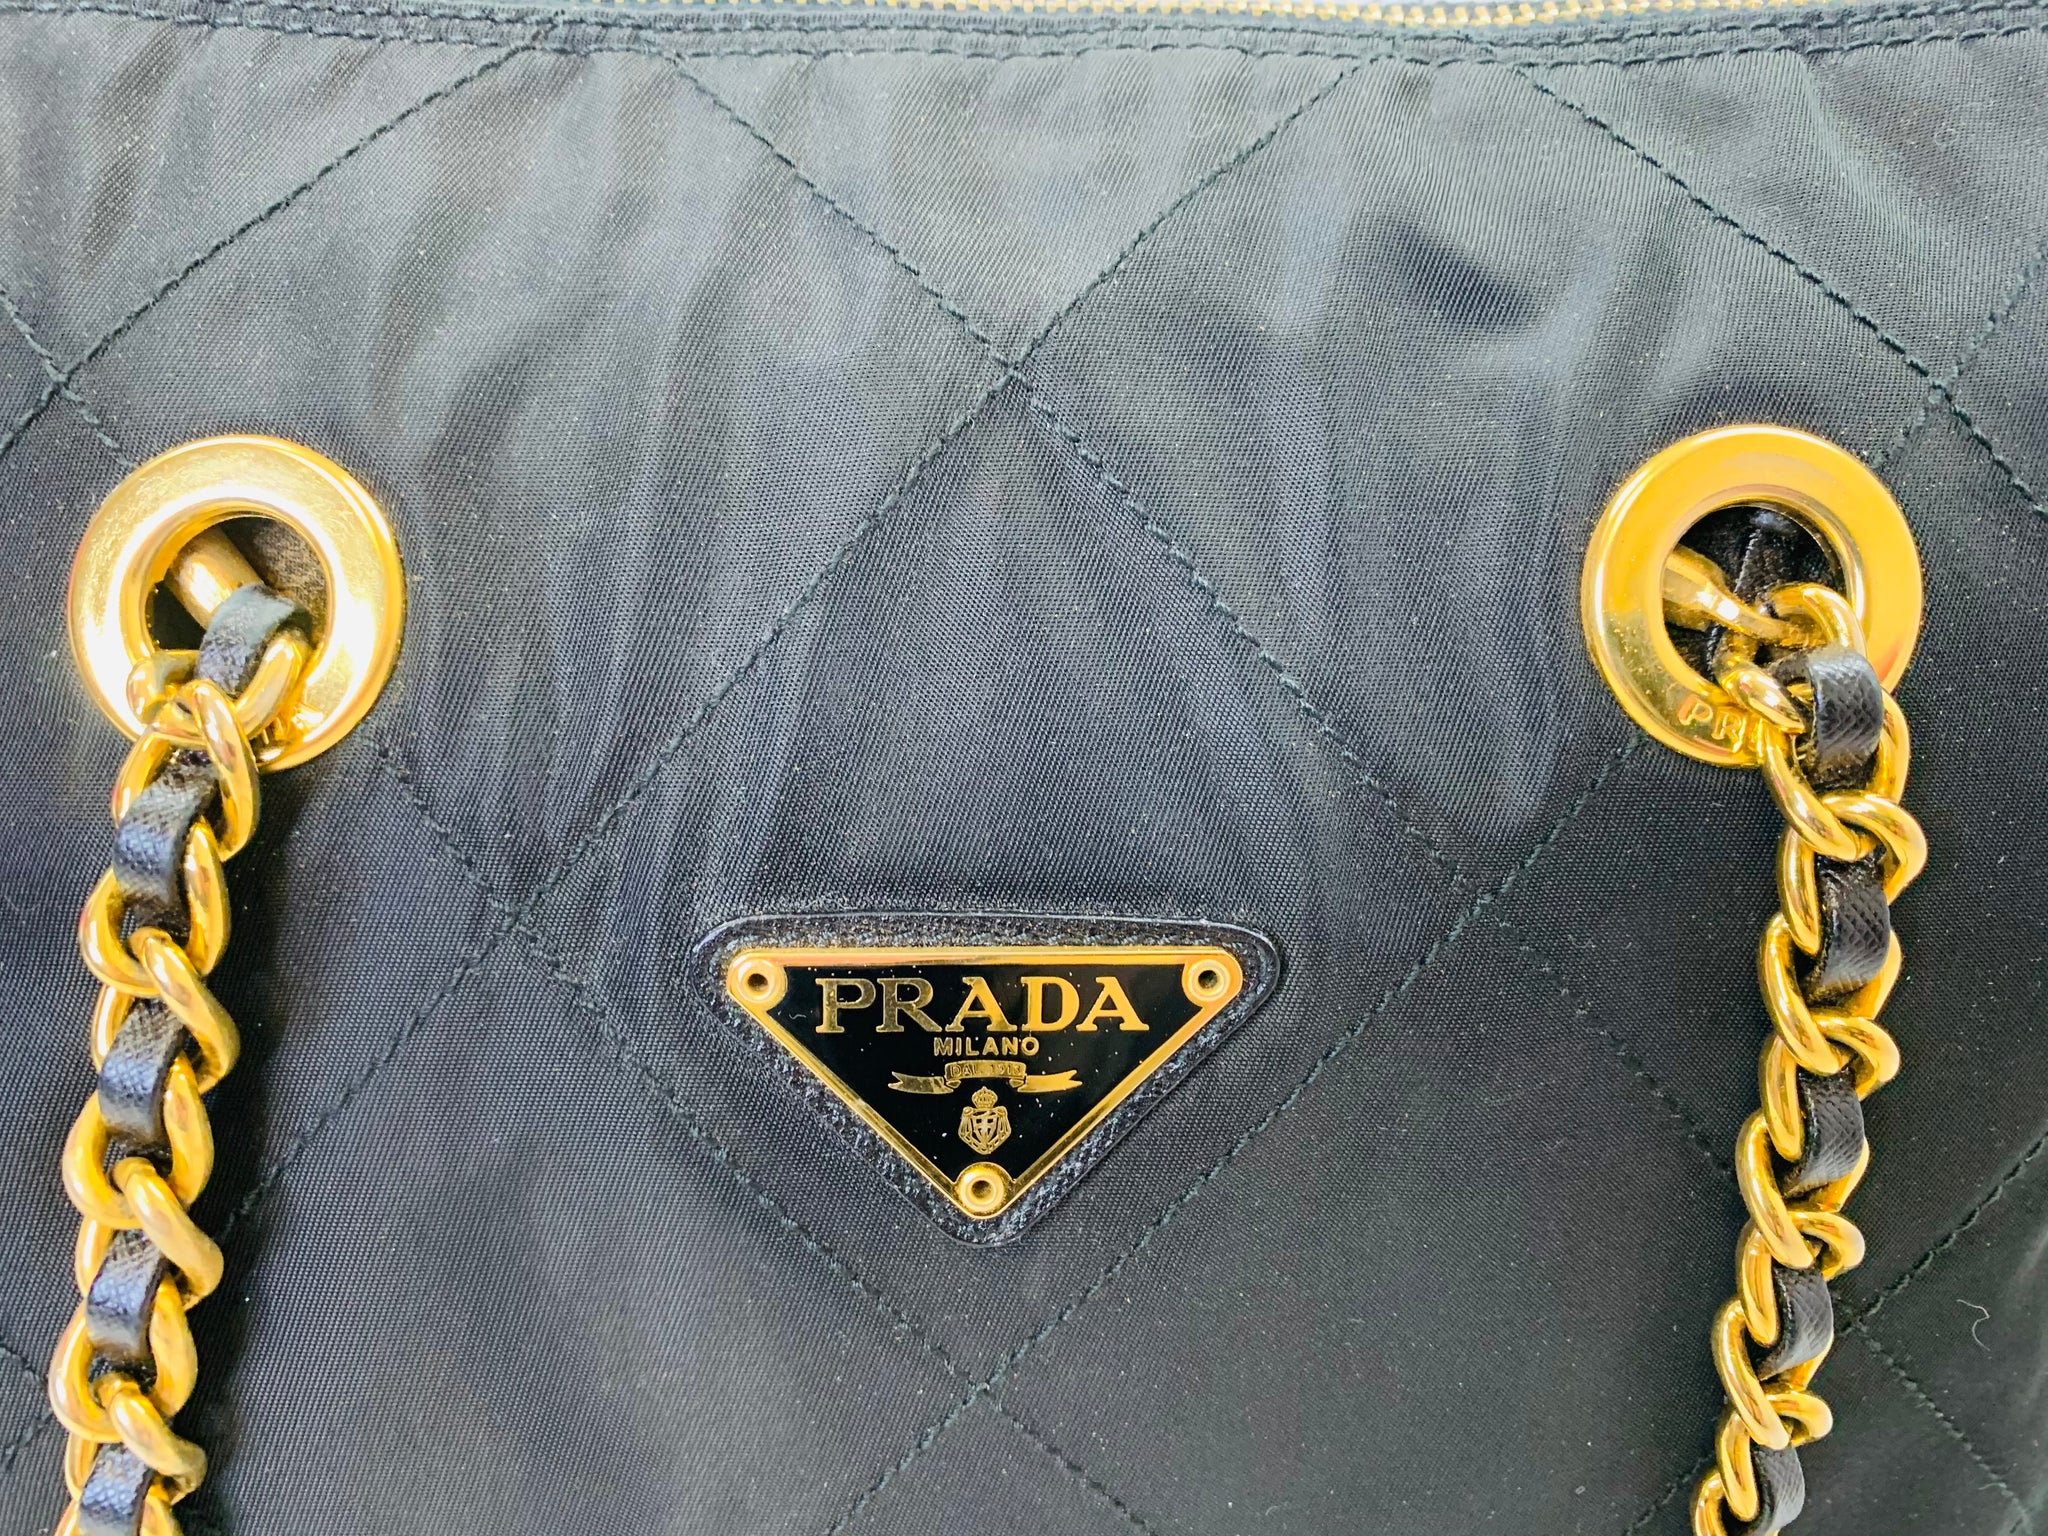 Prada Nylon Vintage Handbags